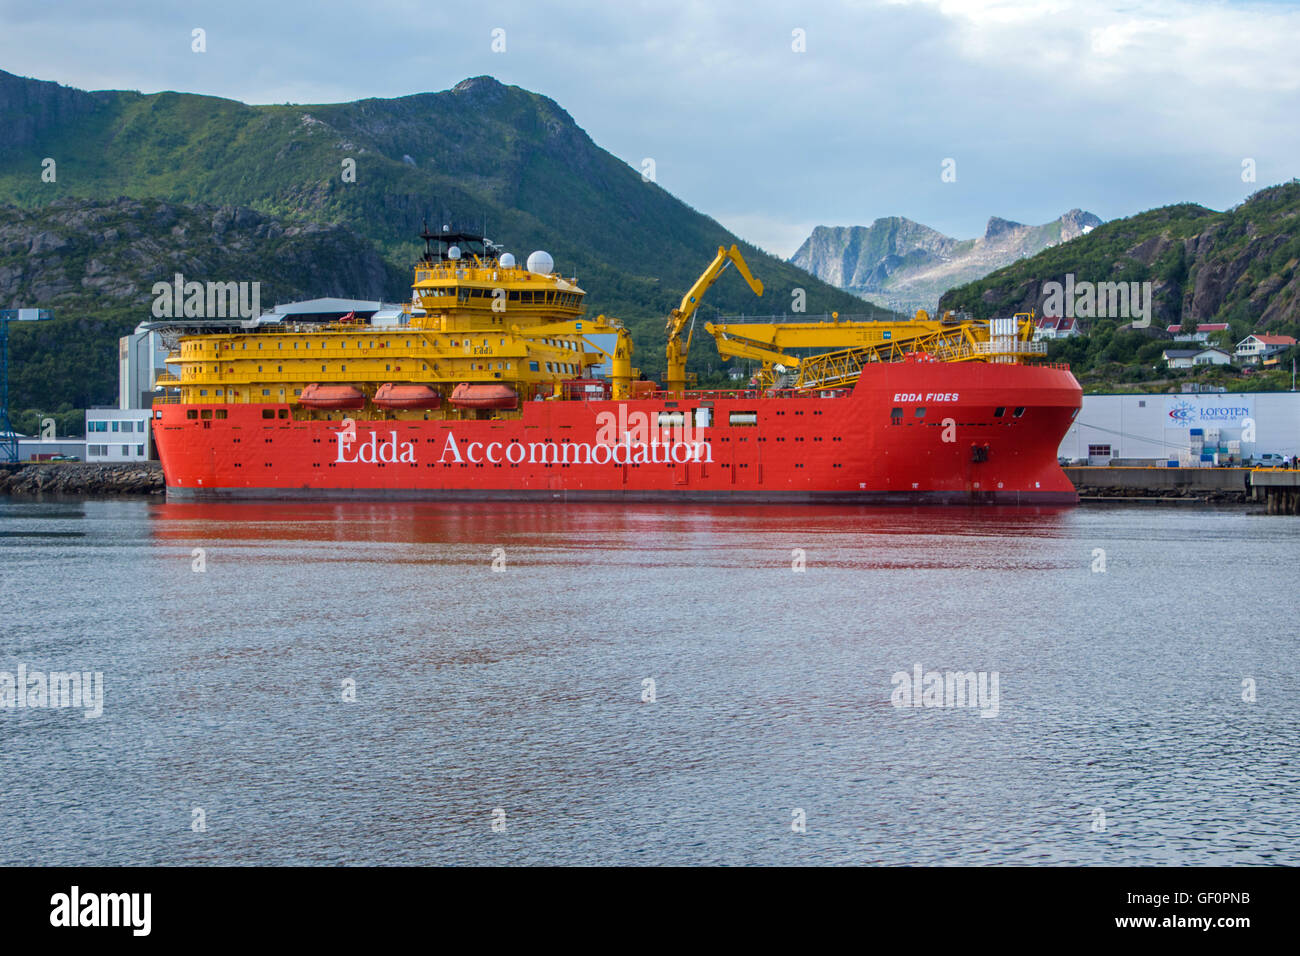 Edda Fides flotel, navire de soutien de l'industrie du pétrole, big red ship Banque D'Images